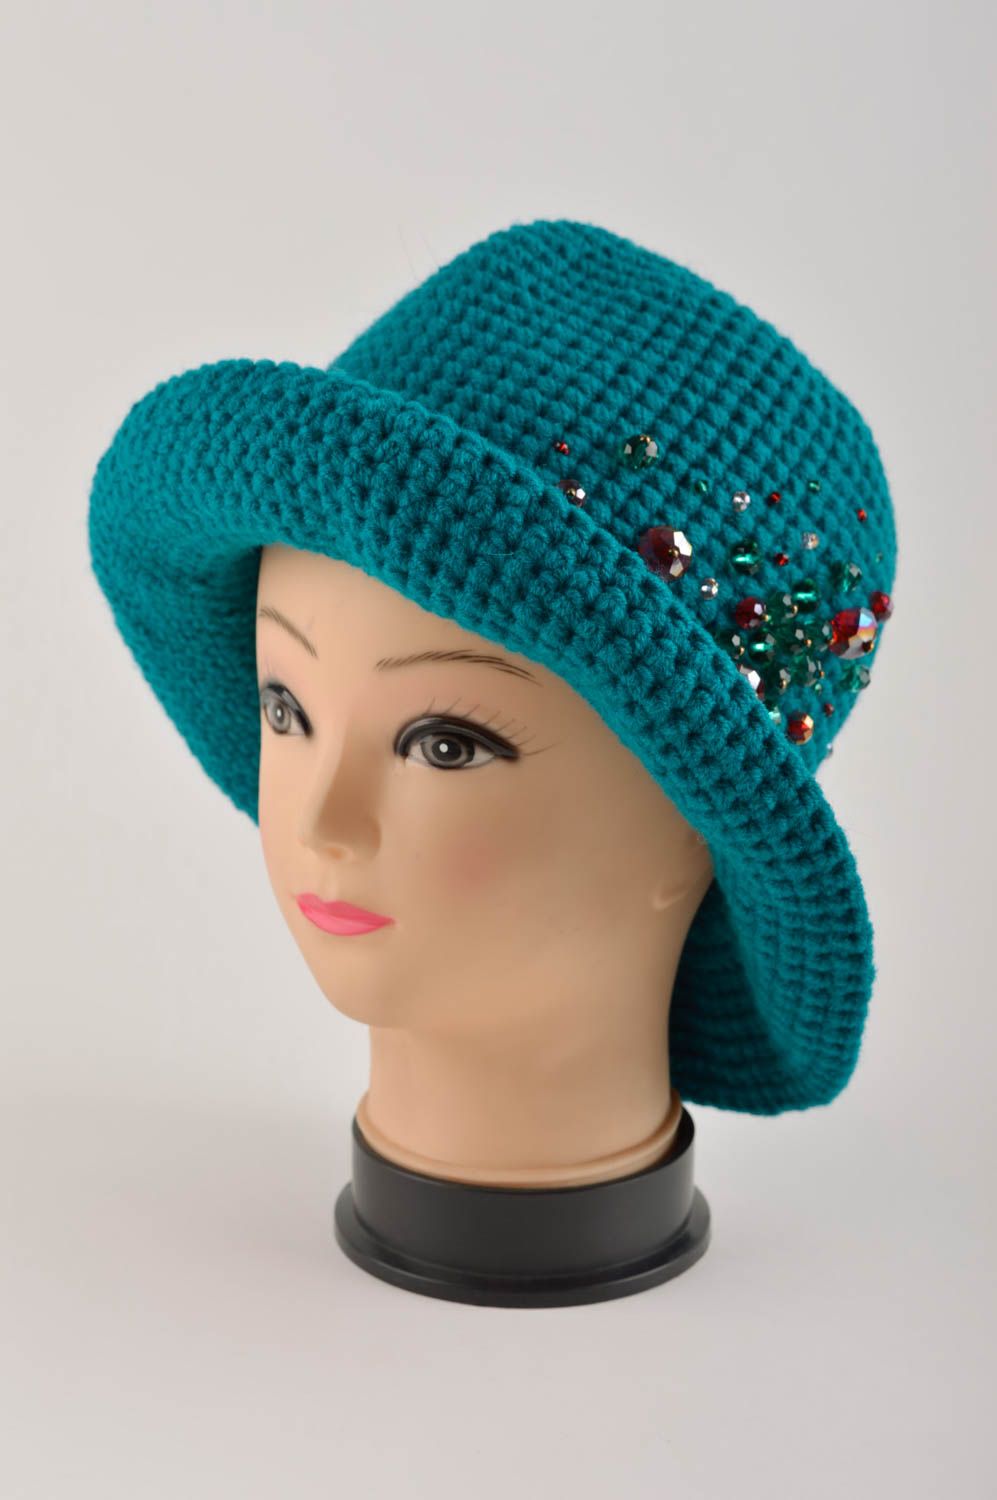 Handmade hat crocheted hat woolen hat for women gift ideas unusual headwear photo 2